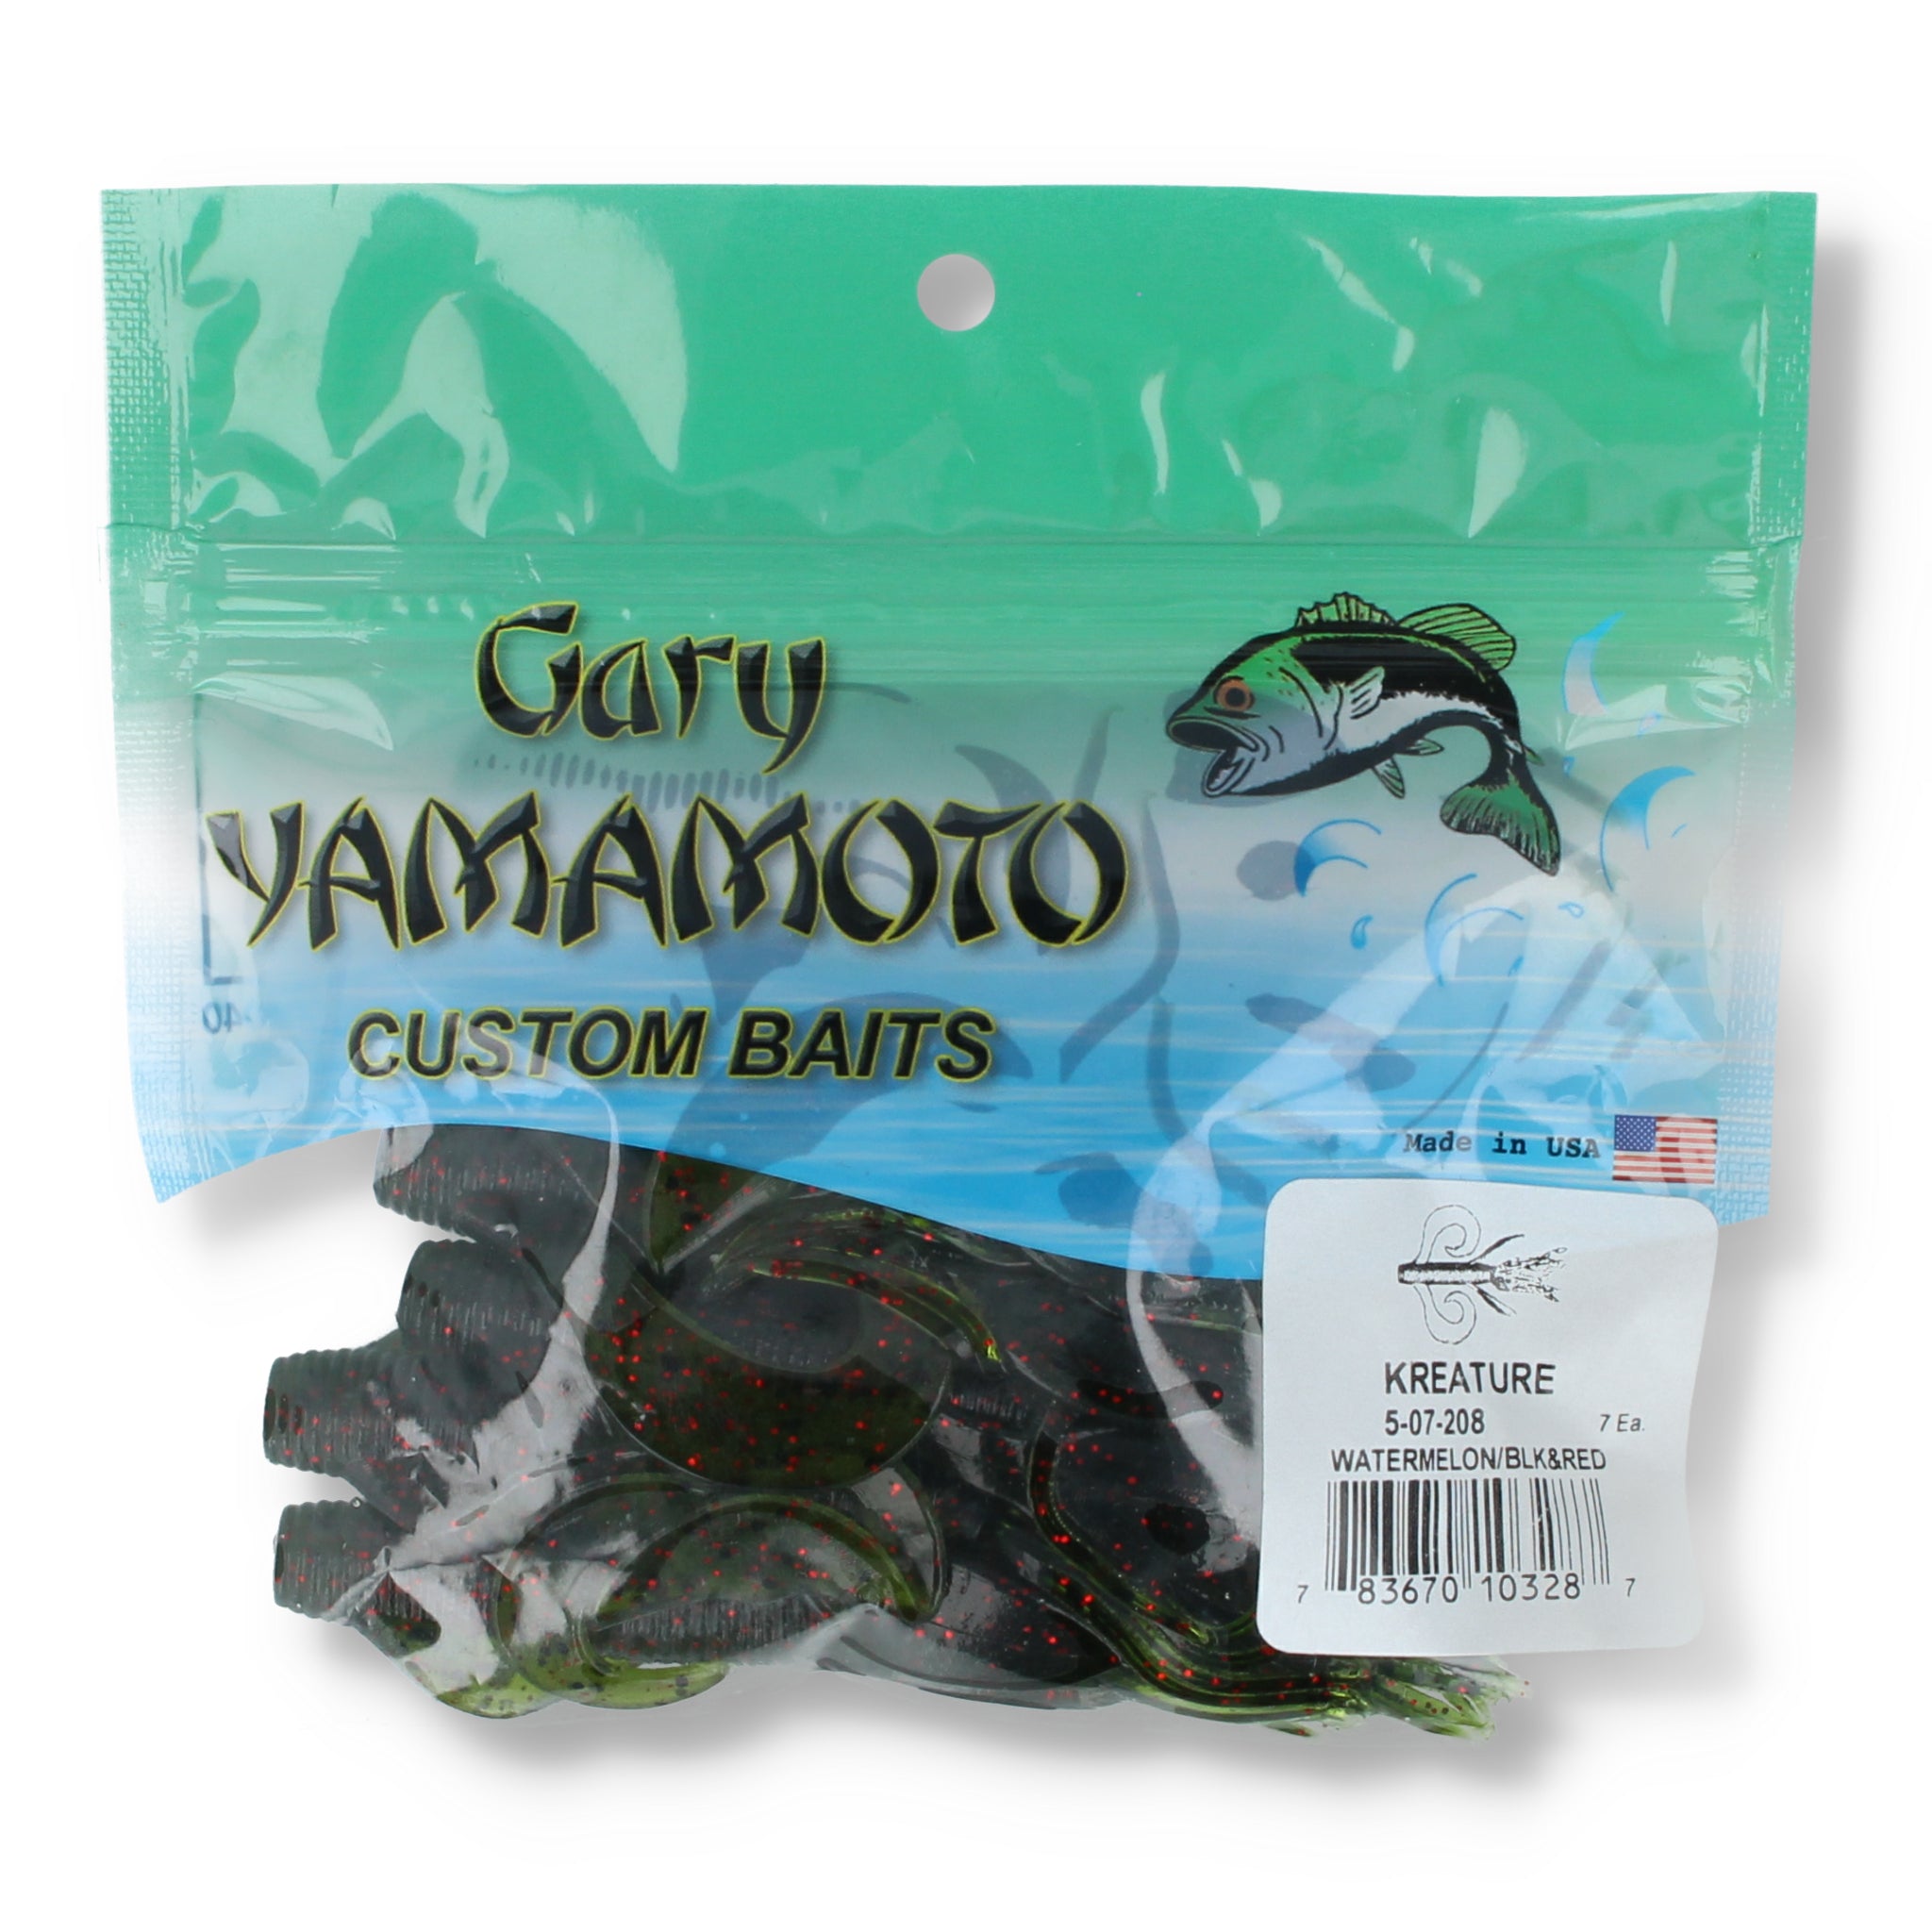 Gary Yamamoto Custom Baits Kreature 4"